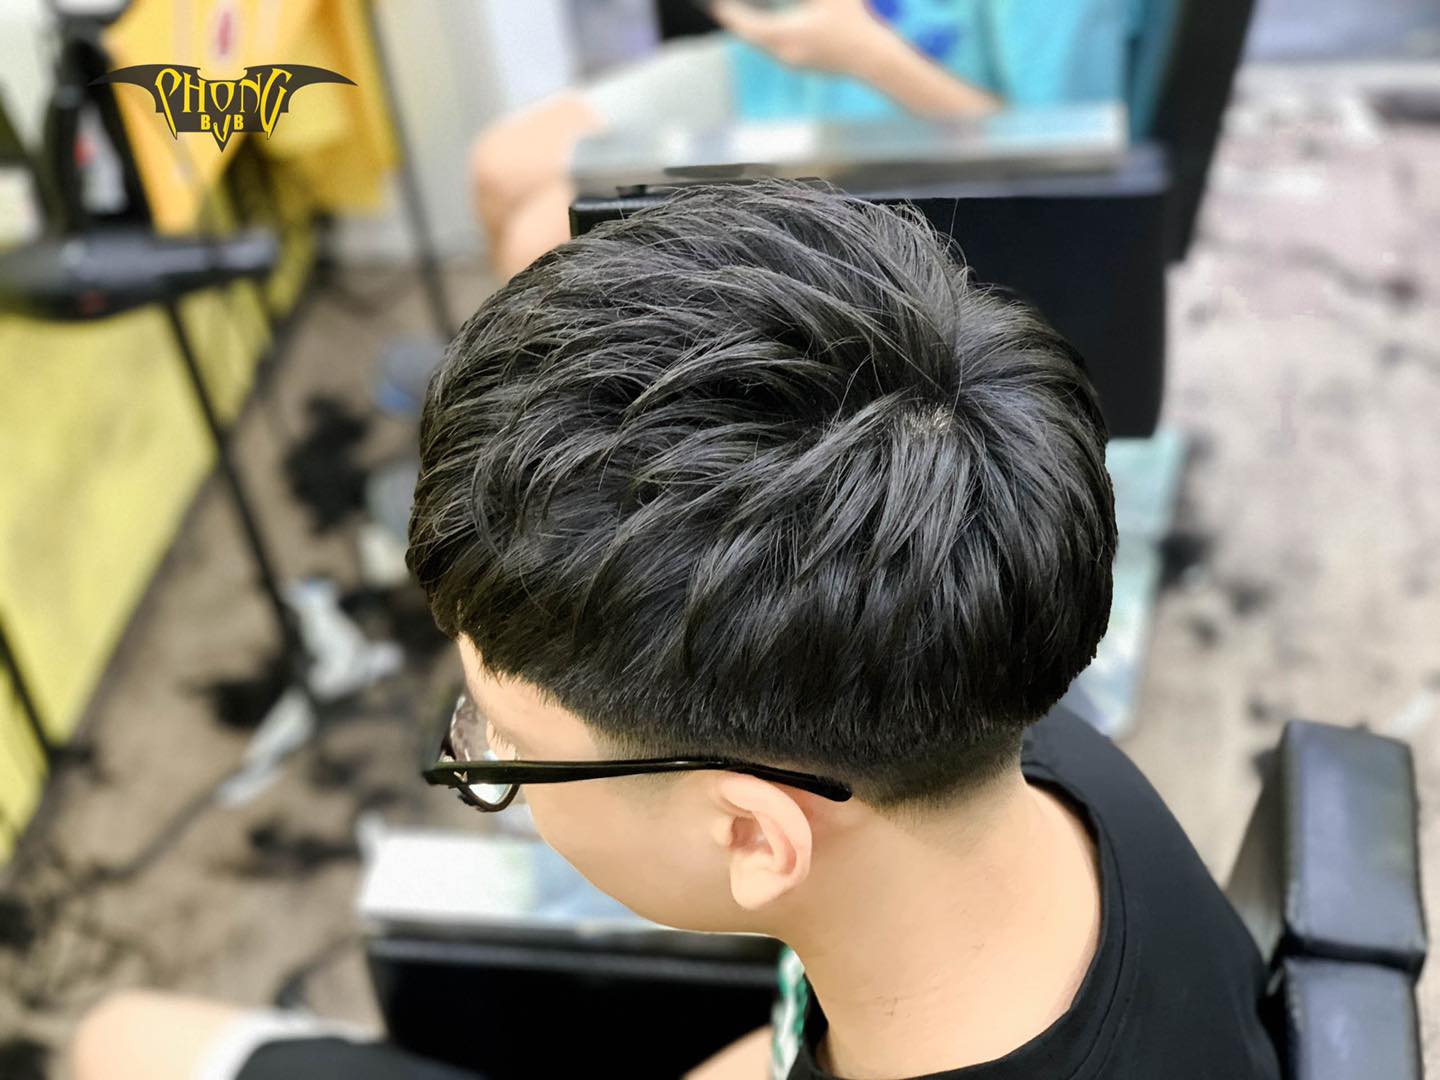 Top 4 Tiệm cắt tóc nam đẹp và chất lượng nhất quận Nam Từ Liêm Hà Nội   AllTopvn